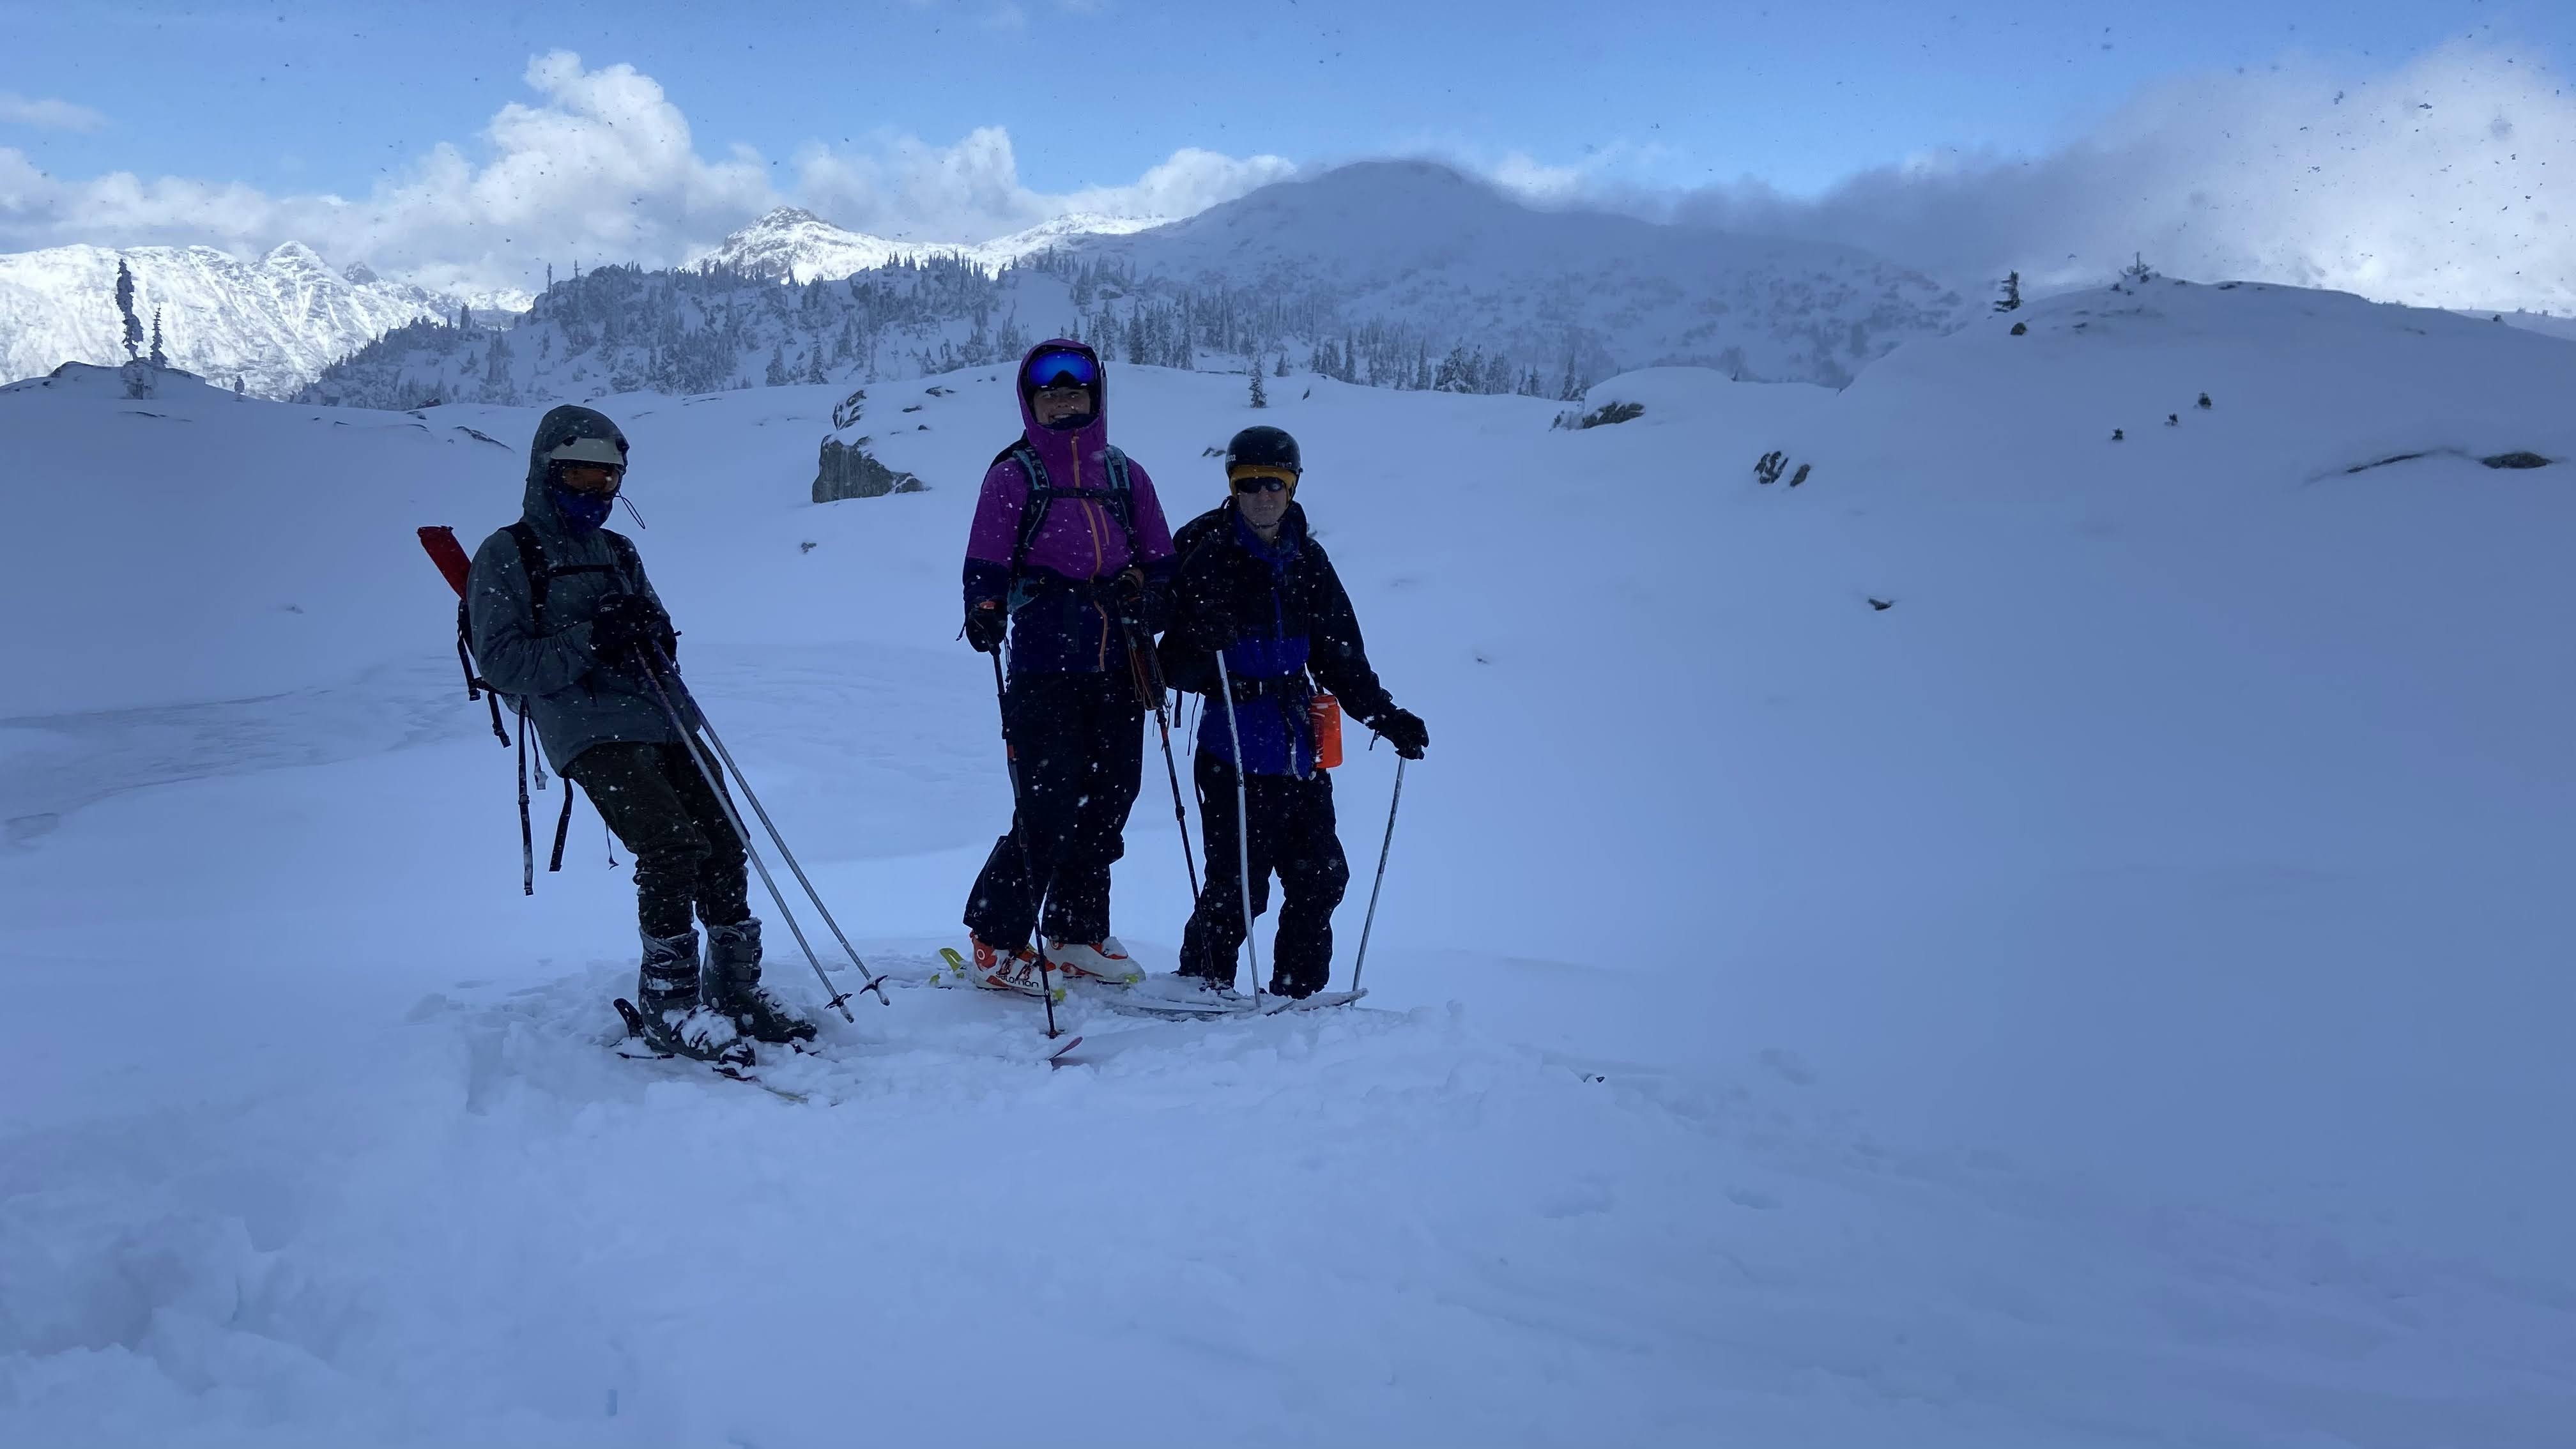 Happy skiers enjoying the first powder of the season: Thomas, Kaila & Alex